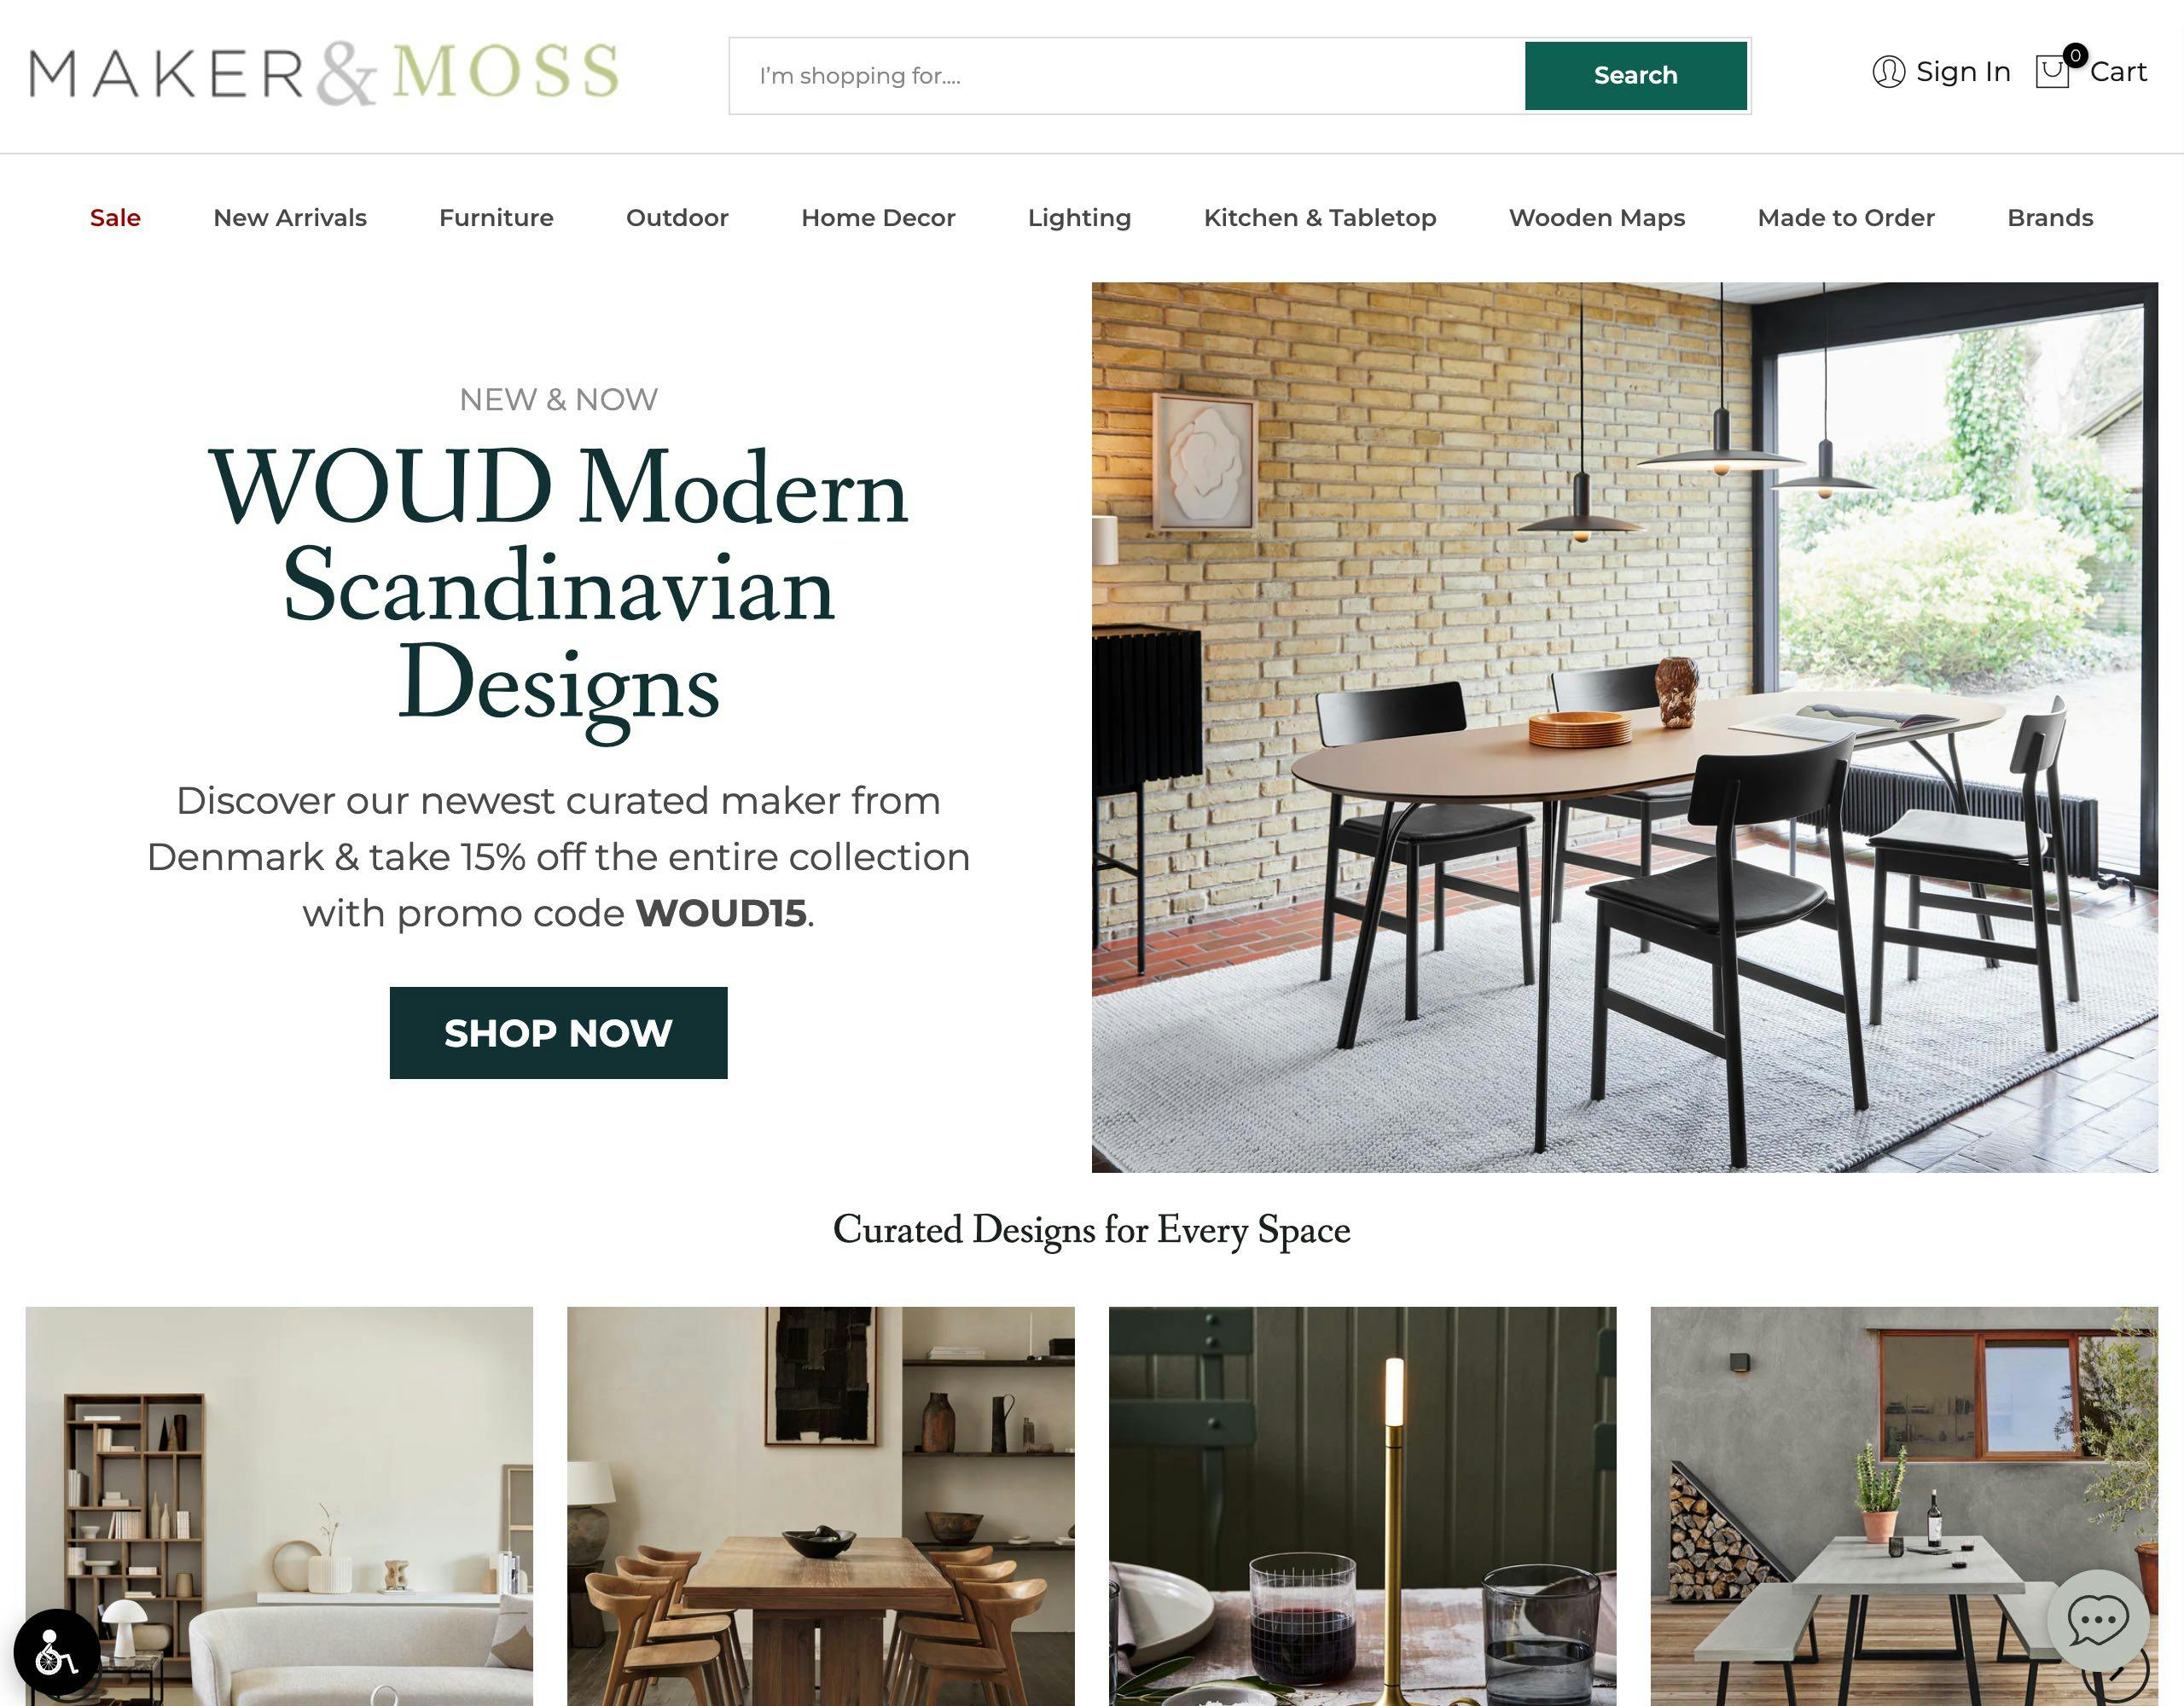 Maker & Moss website